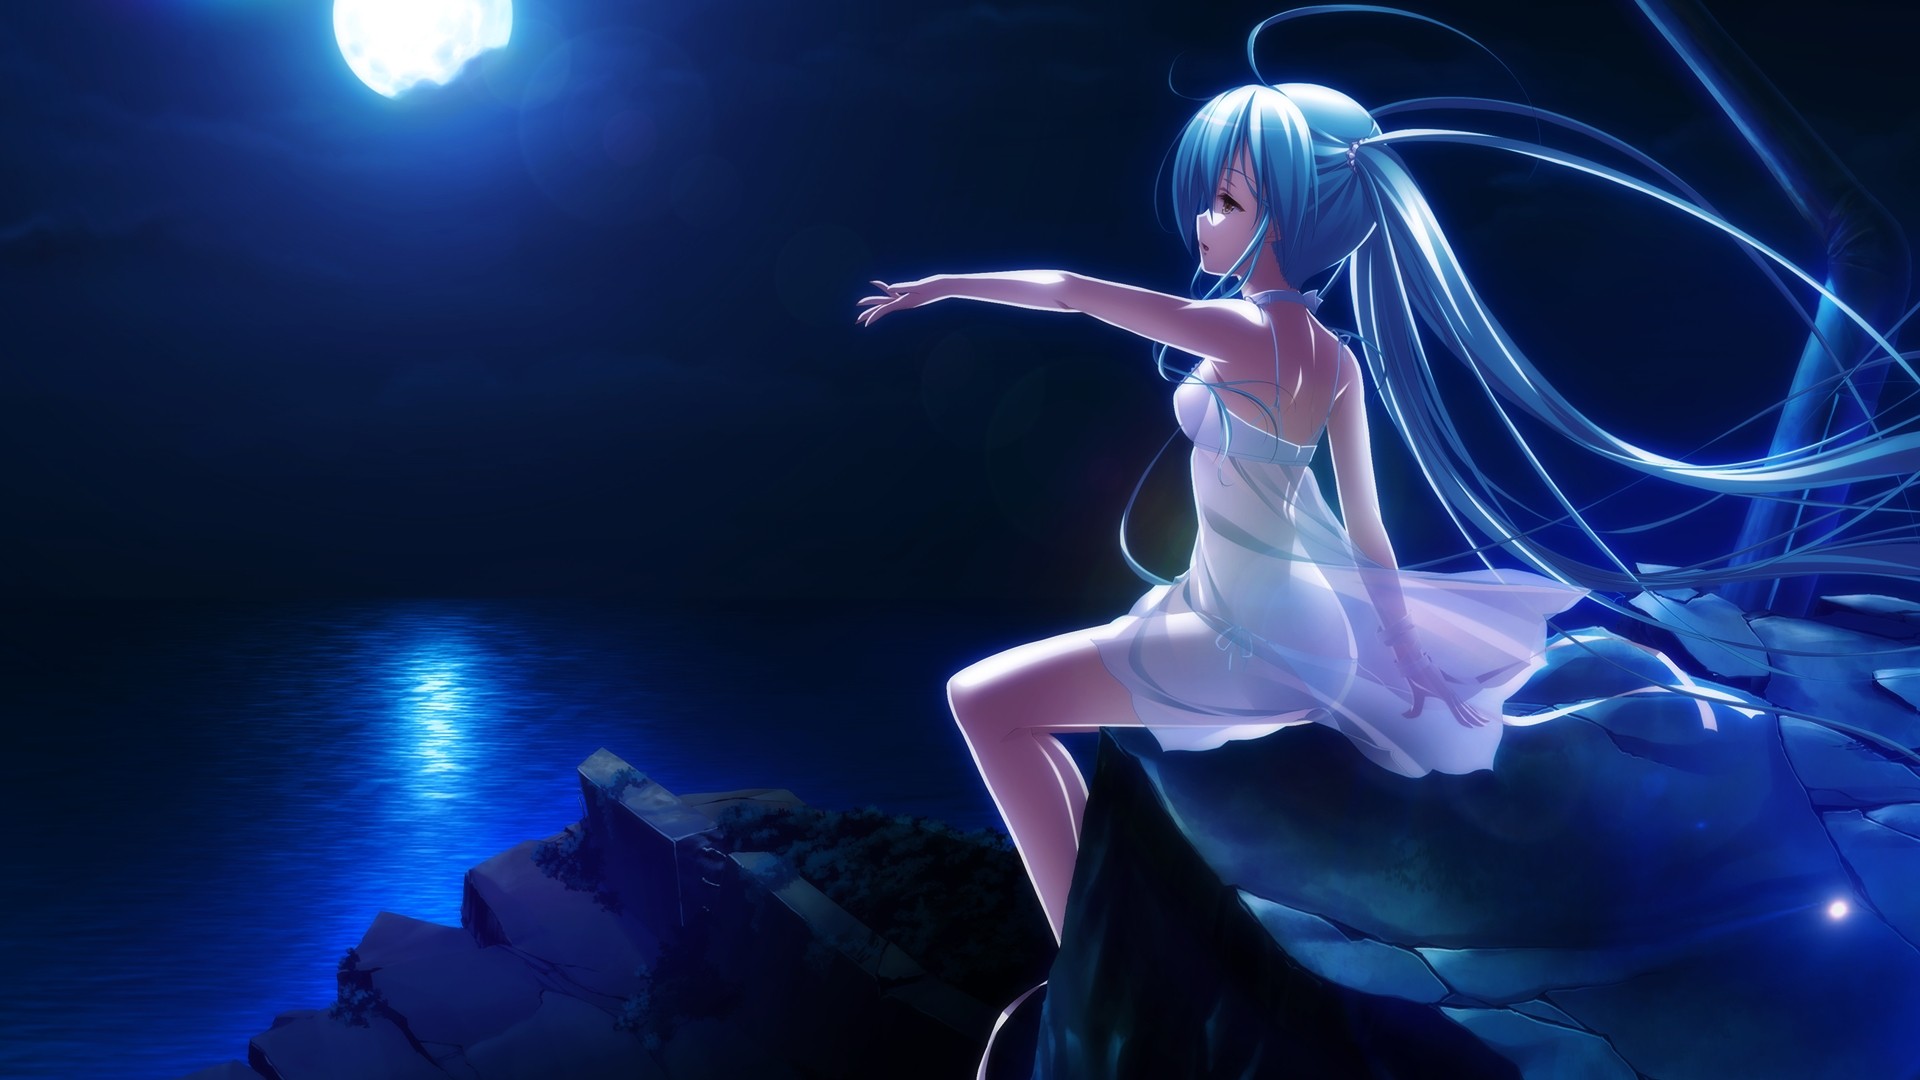 Night Anime Girl Desktop Wallpaper